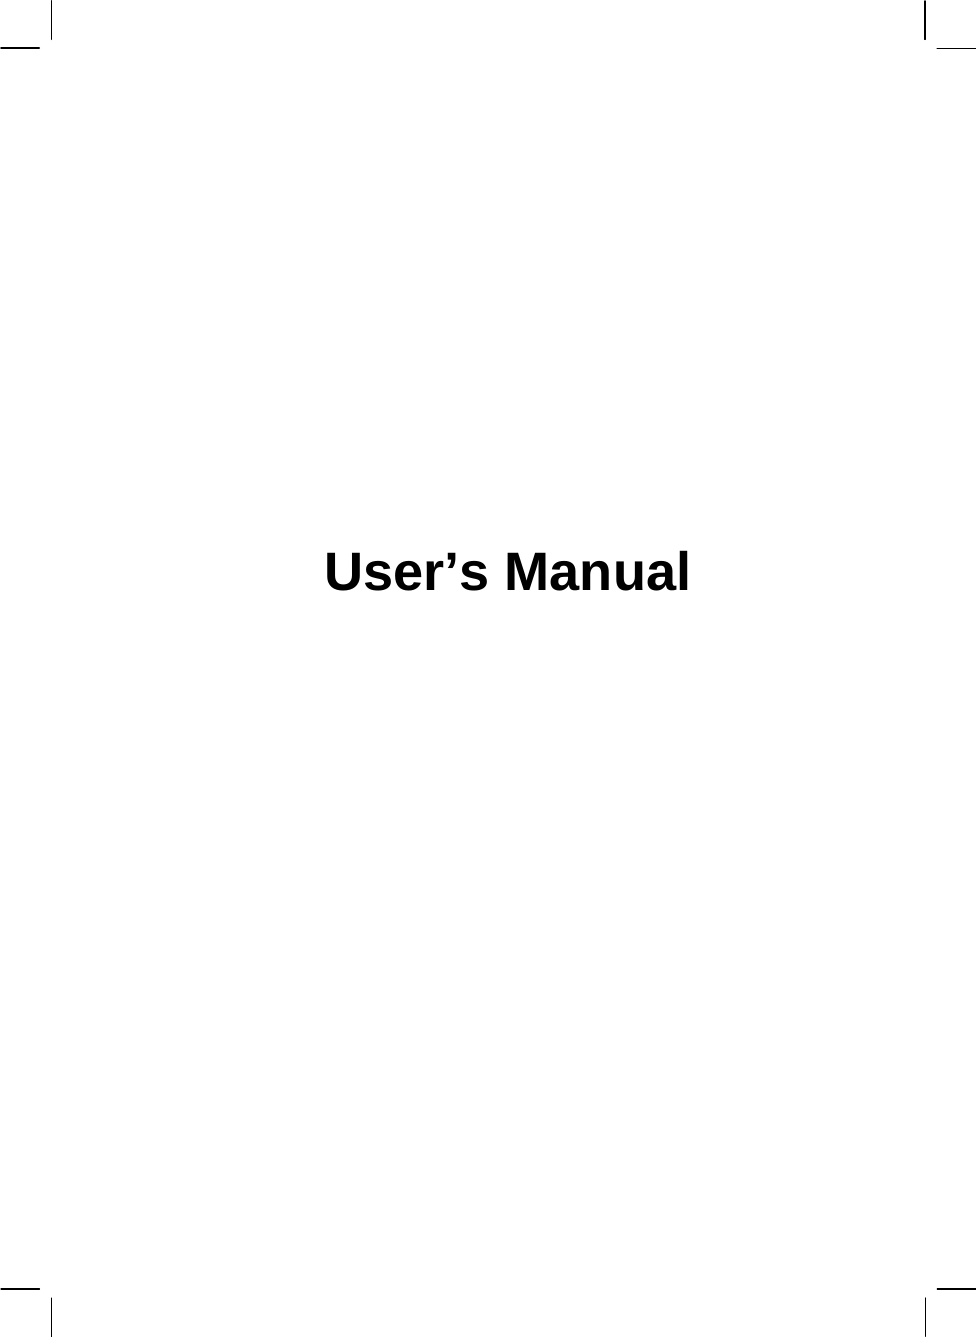            User’s Manual               